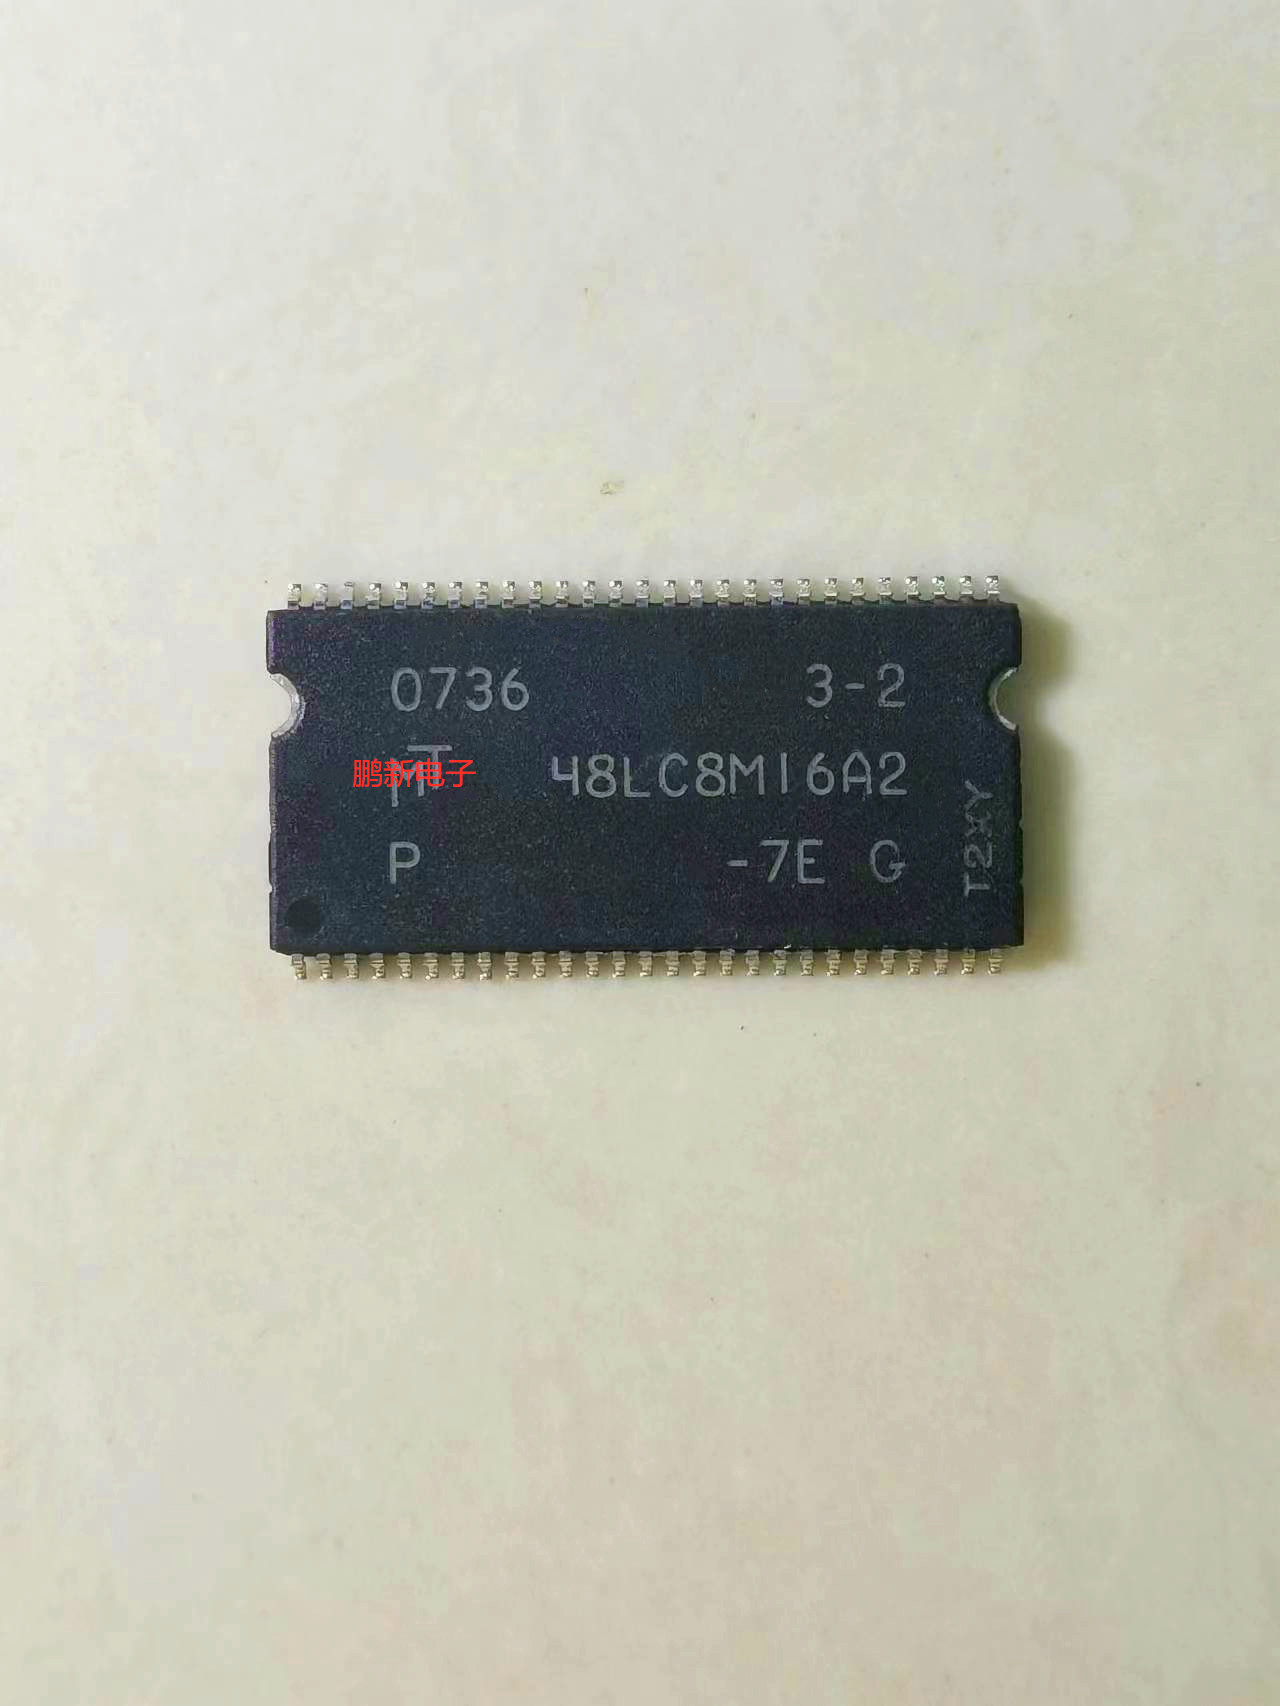 MT48LC8M16A2P-75G 48LC8M16A2 TSOP-54 存储器 IC芯片 电子元器件市场 集成电路（IC） 原图主图